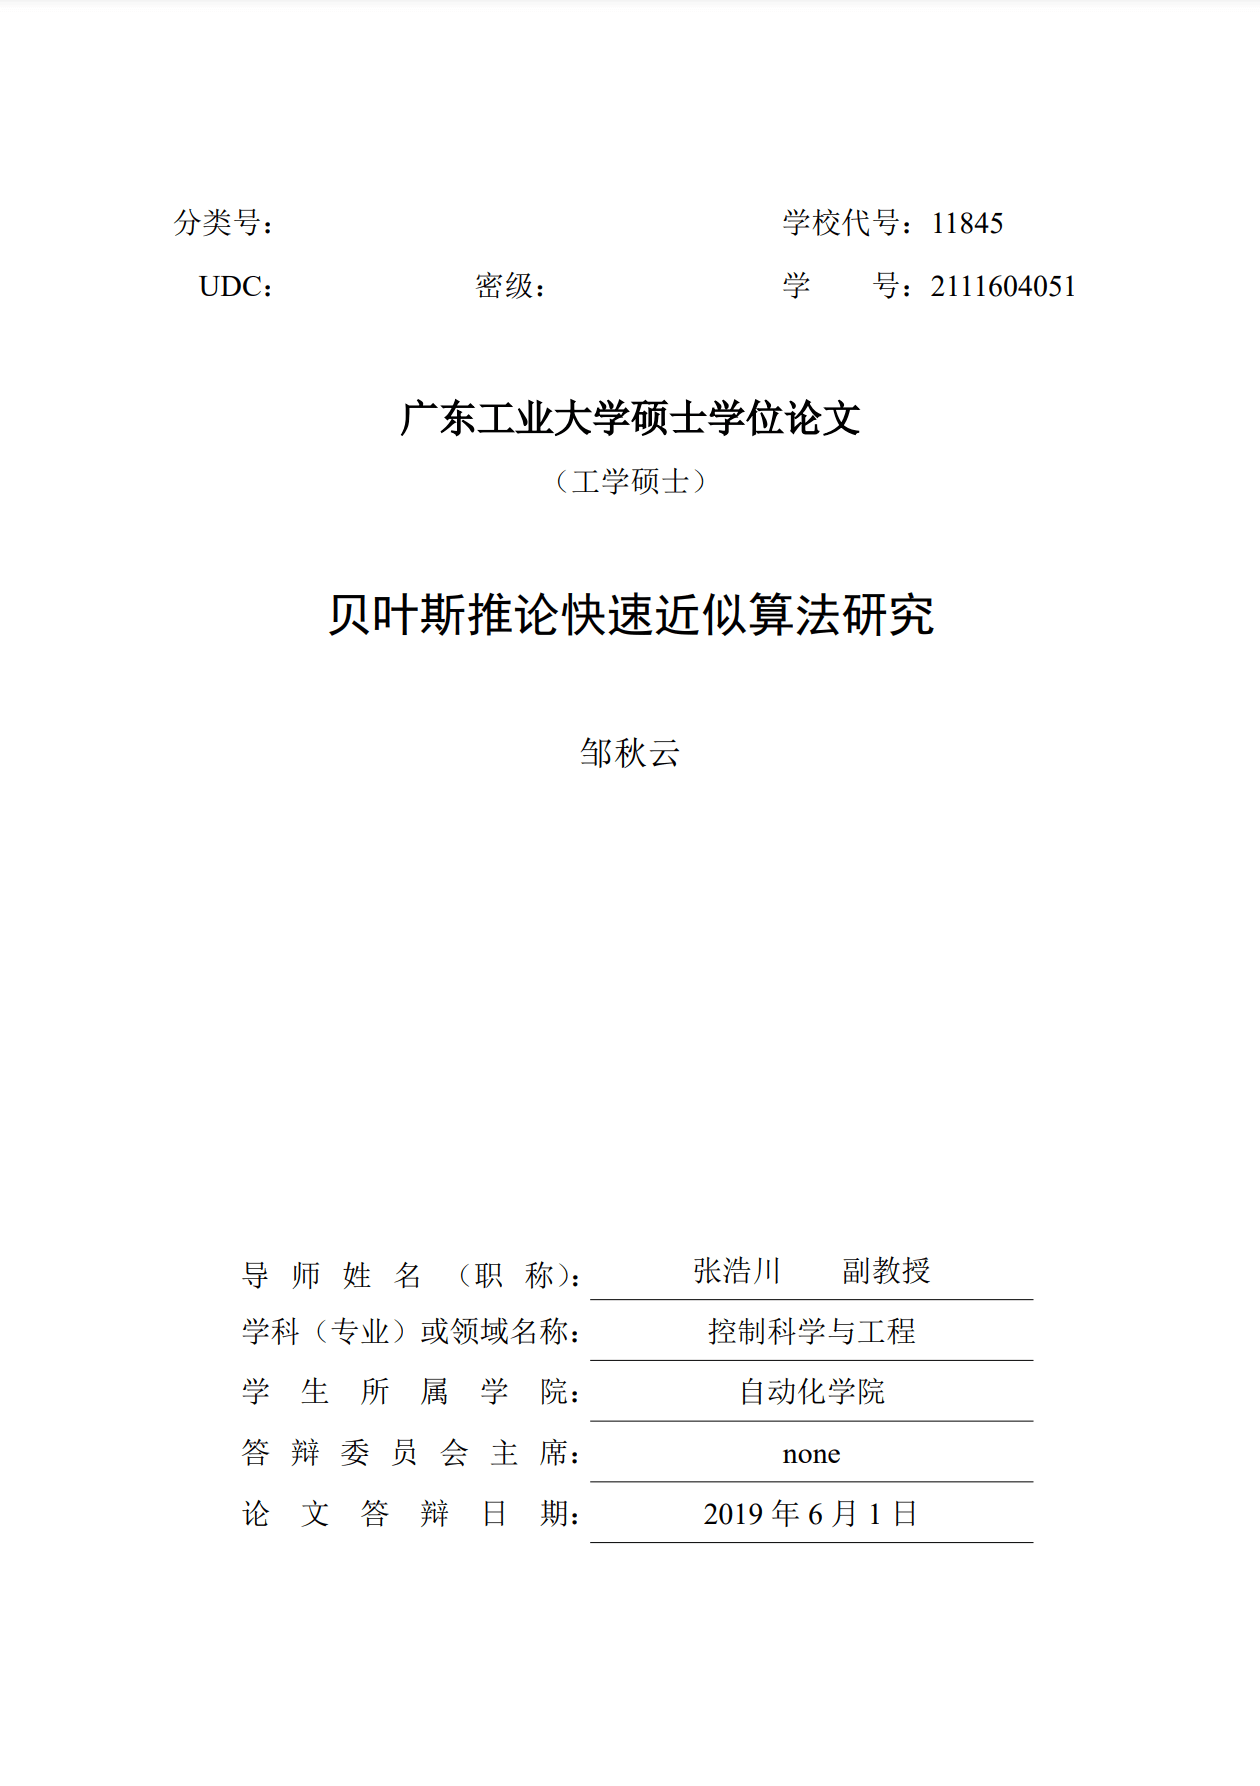 广东工业大学 LaTeX 论文模板